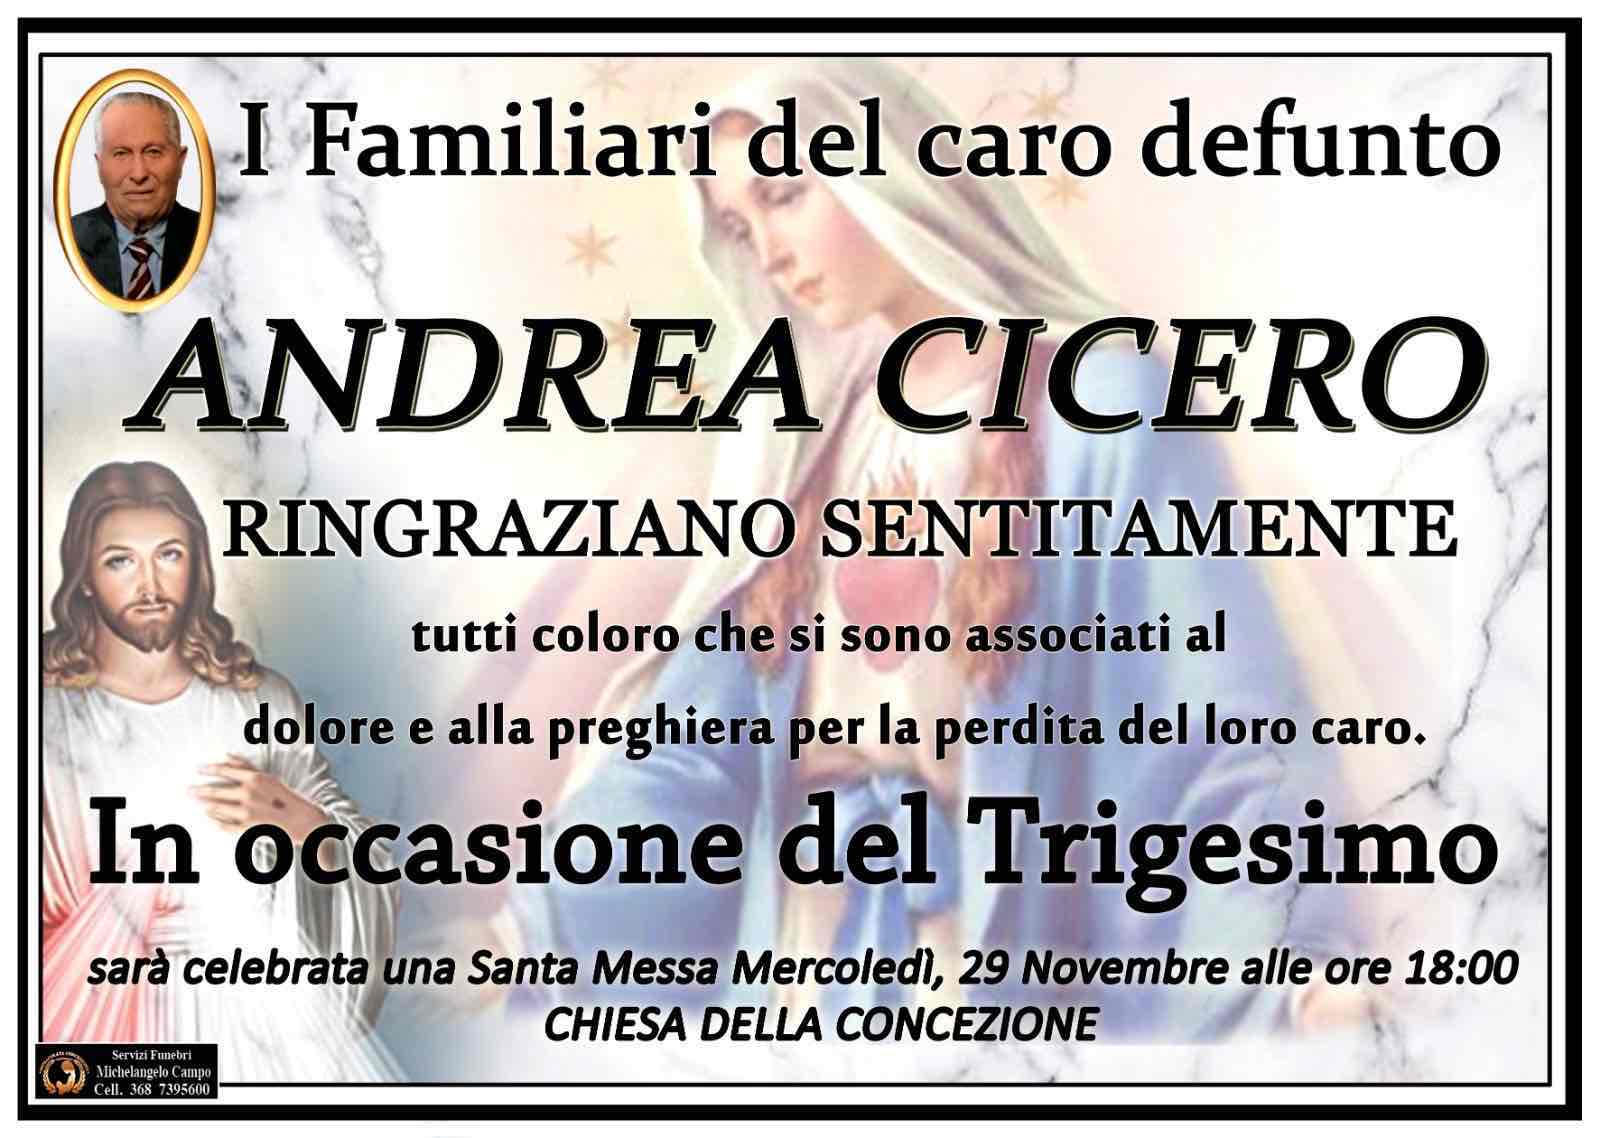 Andrea Cicero